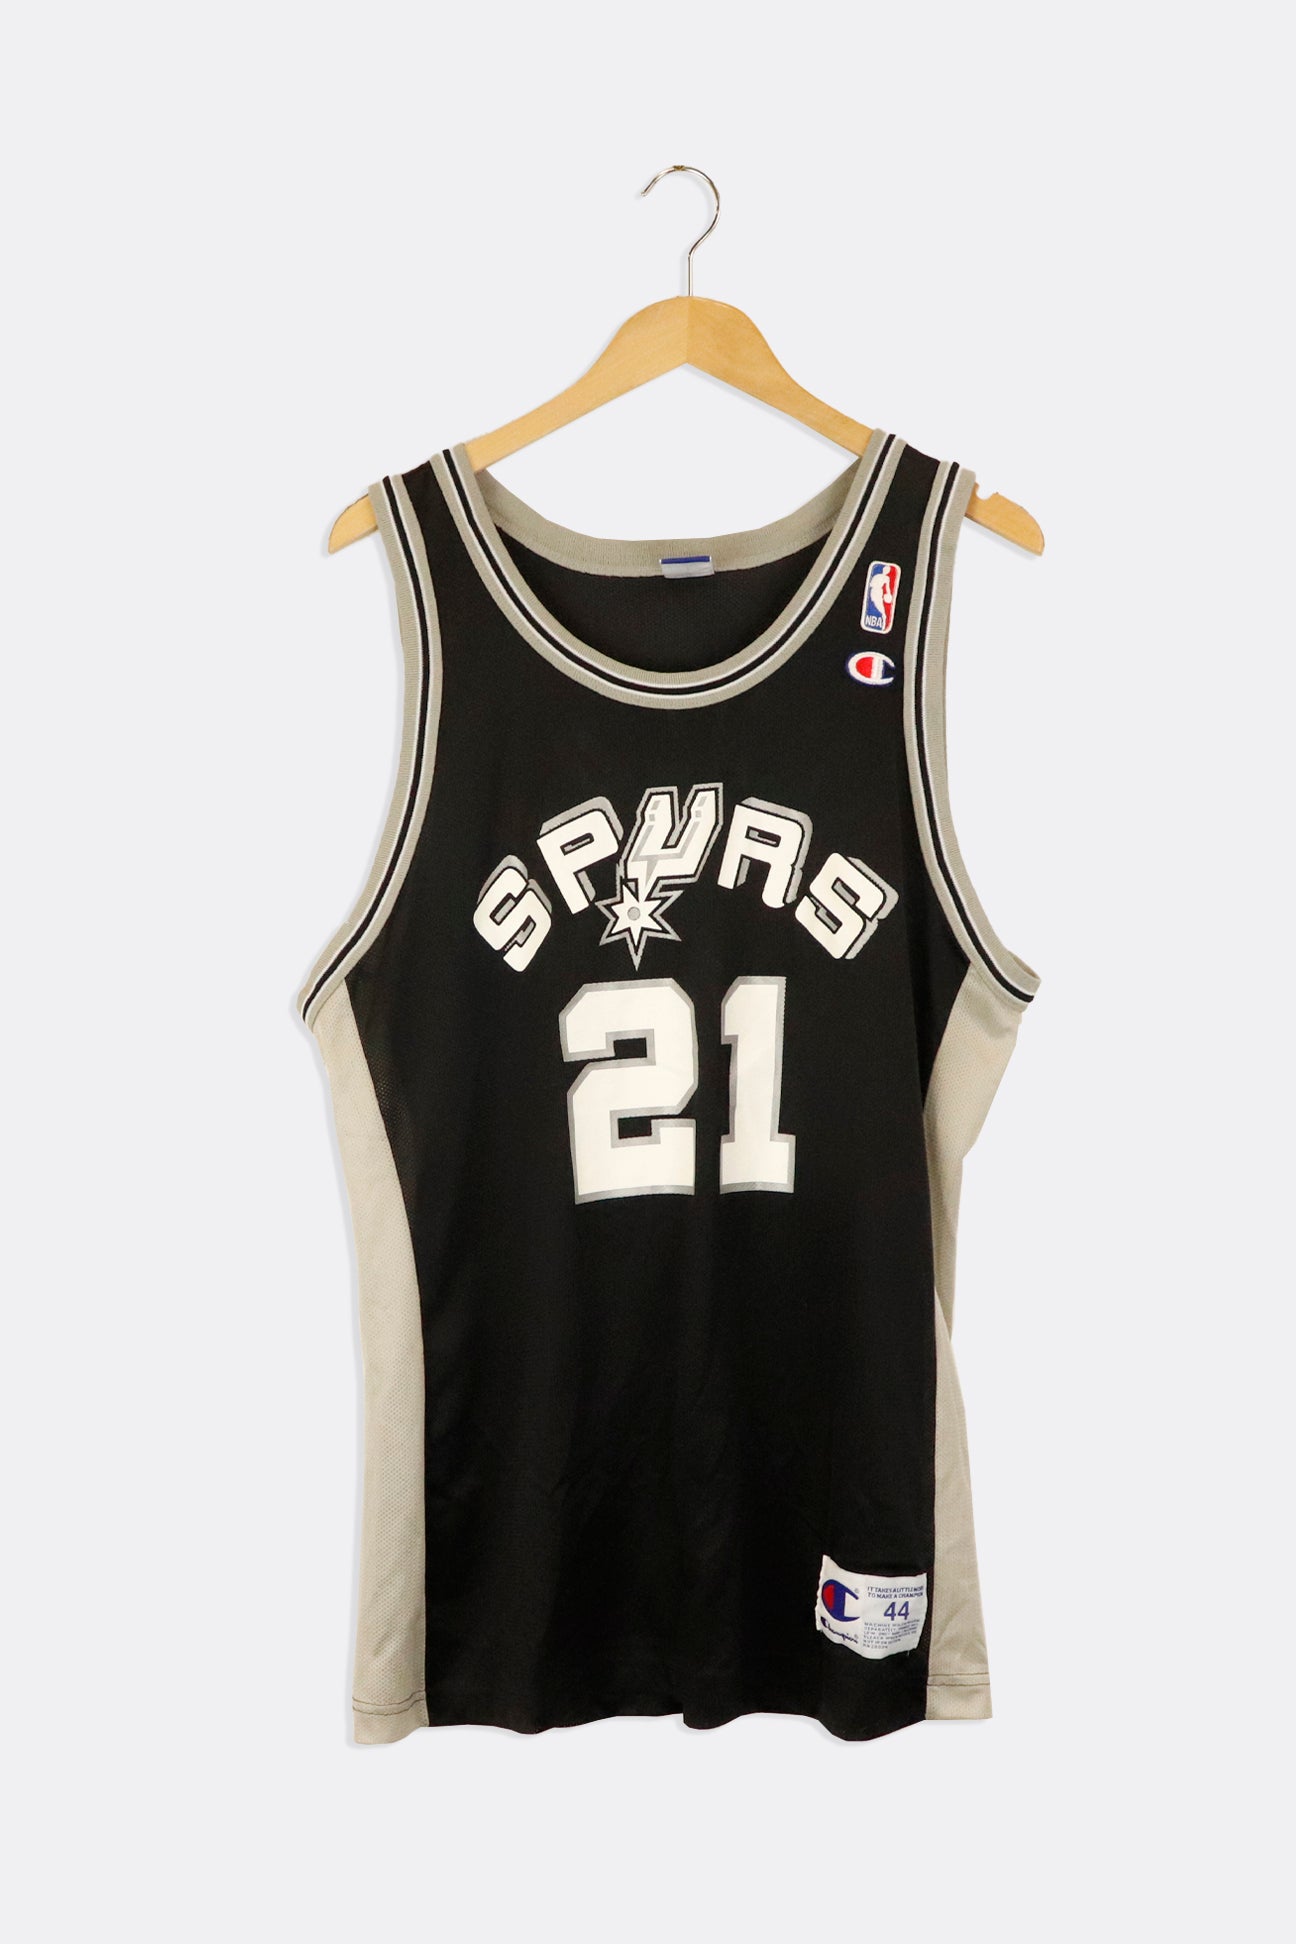 San Antonio Spurs T-shirt, Condition: Good, Size